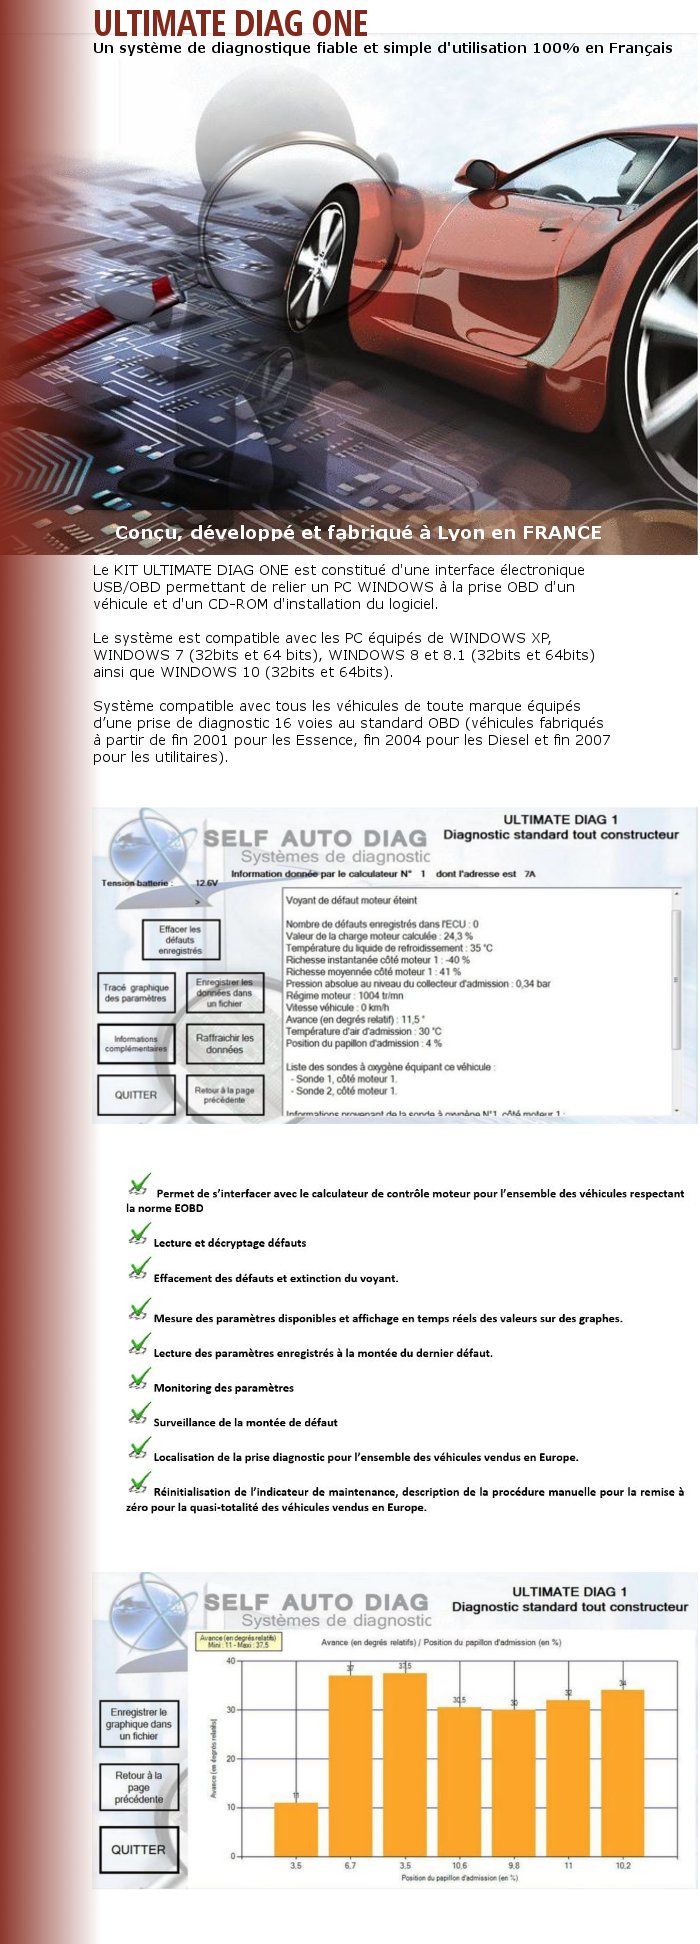 Valise diagnostic multimarques ULTIMATE DIAG ONE - Interface diagnostique multimarque OBD et logiciel SELF AUTO DIAG sur Clé USB